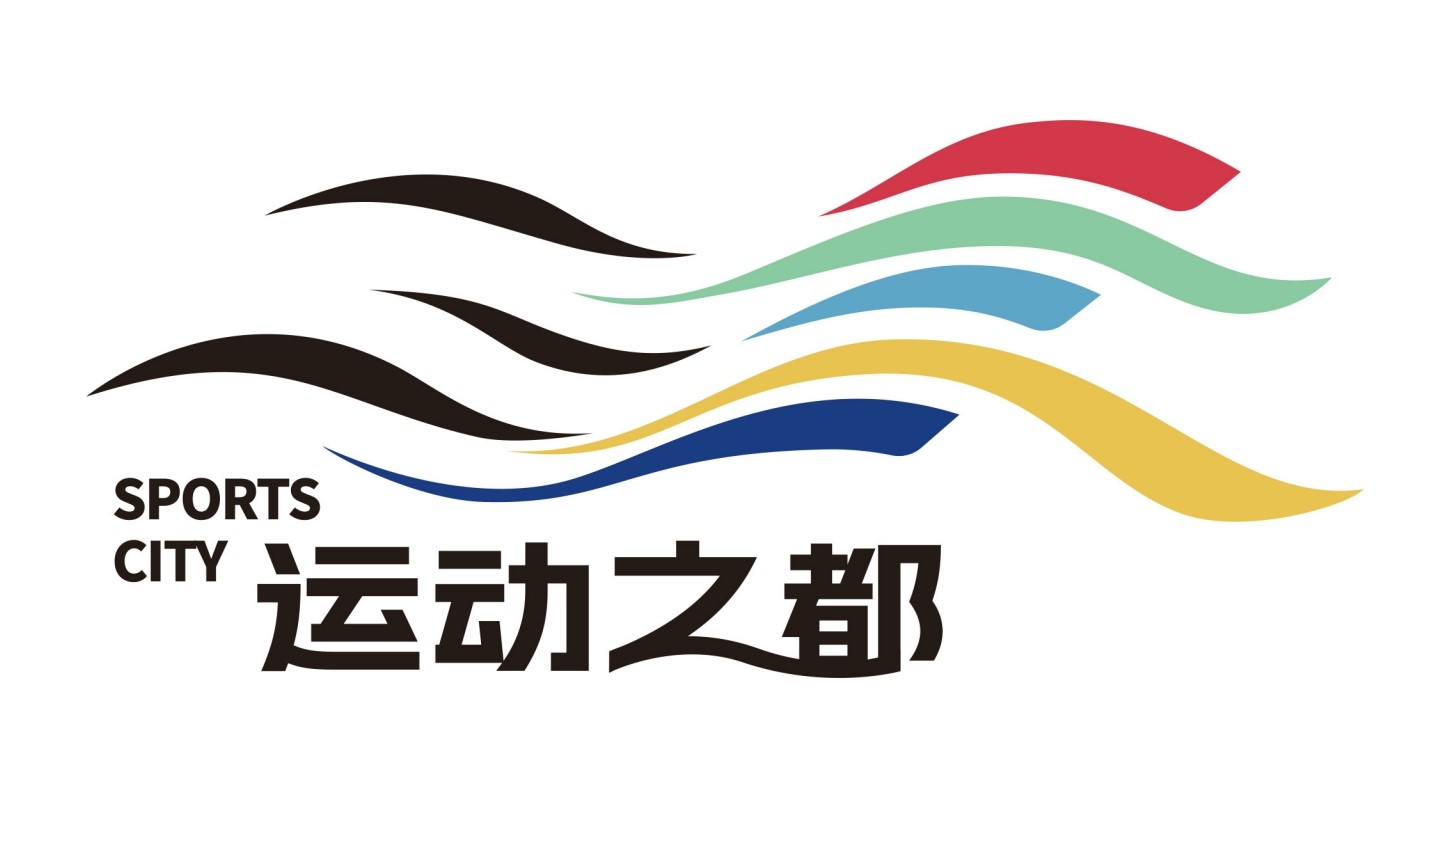 垂直馬拉松賽迎新年 天津發佈“運動之都”標誌與主題口號_fororder_2